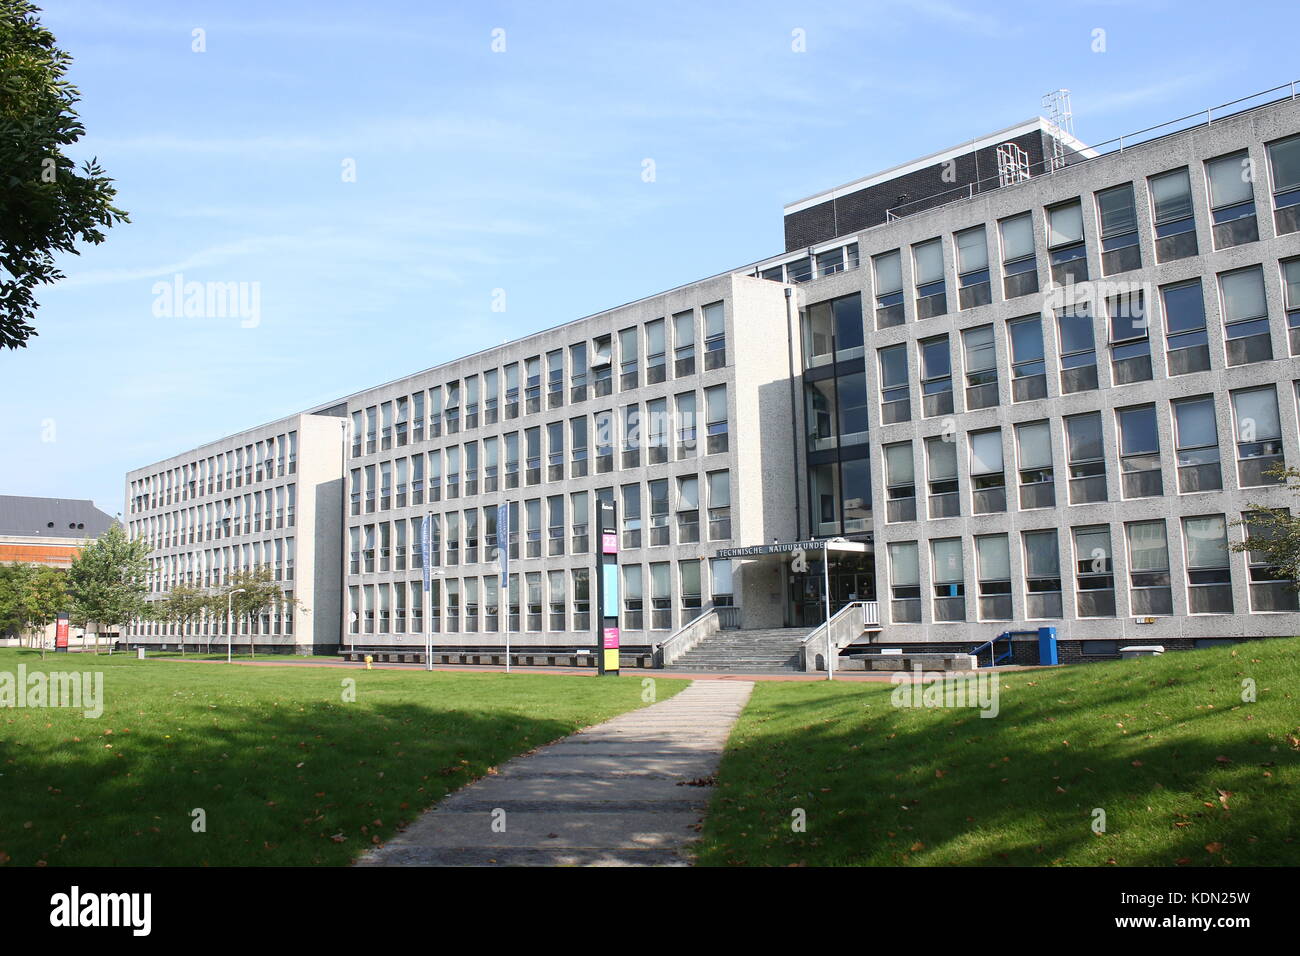 Campus de l'Université technique de Delft, aux Pays-Bas. Faculté des Sciences Appliquées (AS) - Technische Natuurkunde. Bâtiment 22 à Lorentzweg 2. Banque D'Images